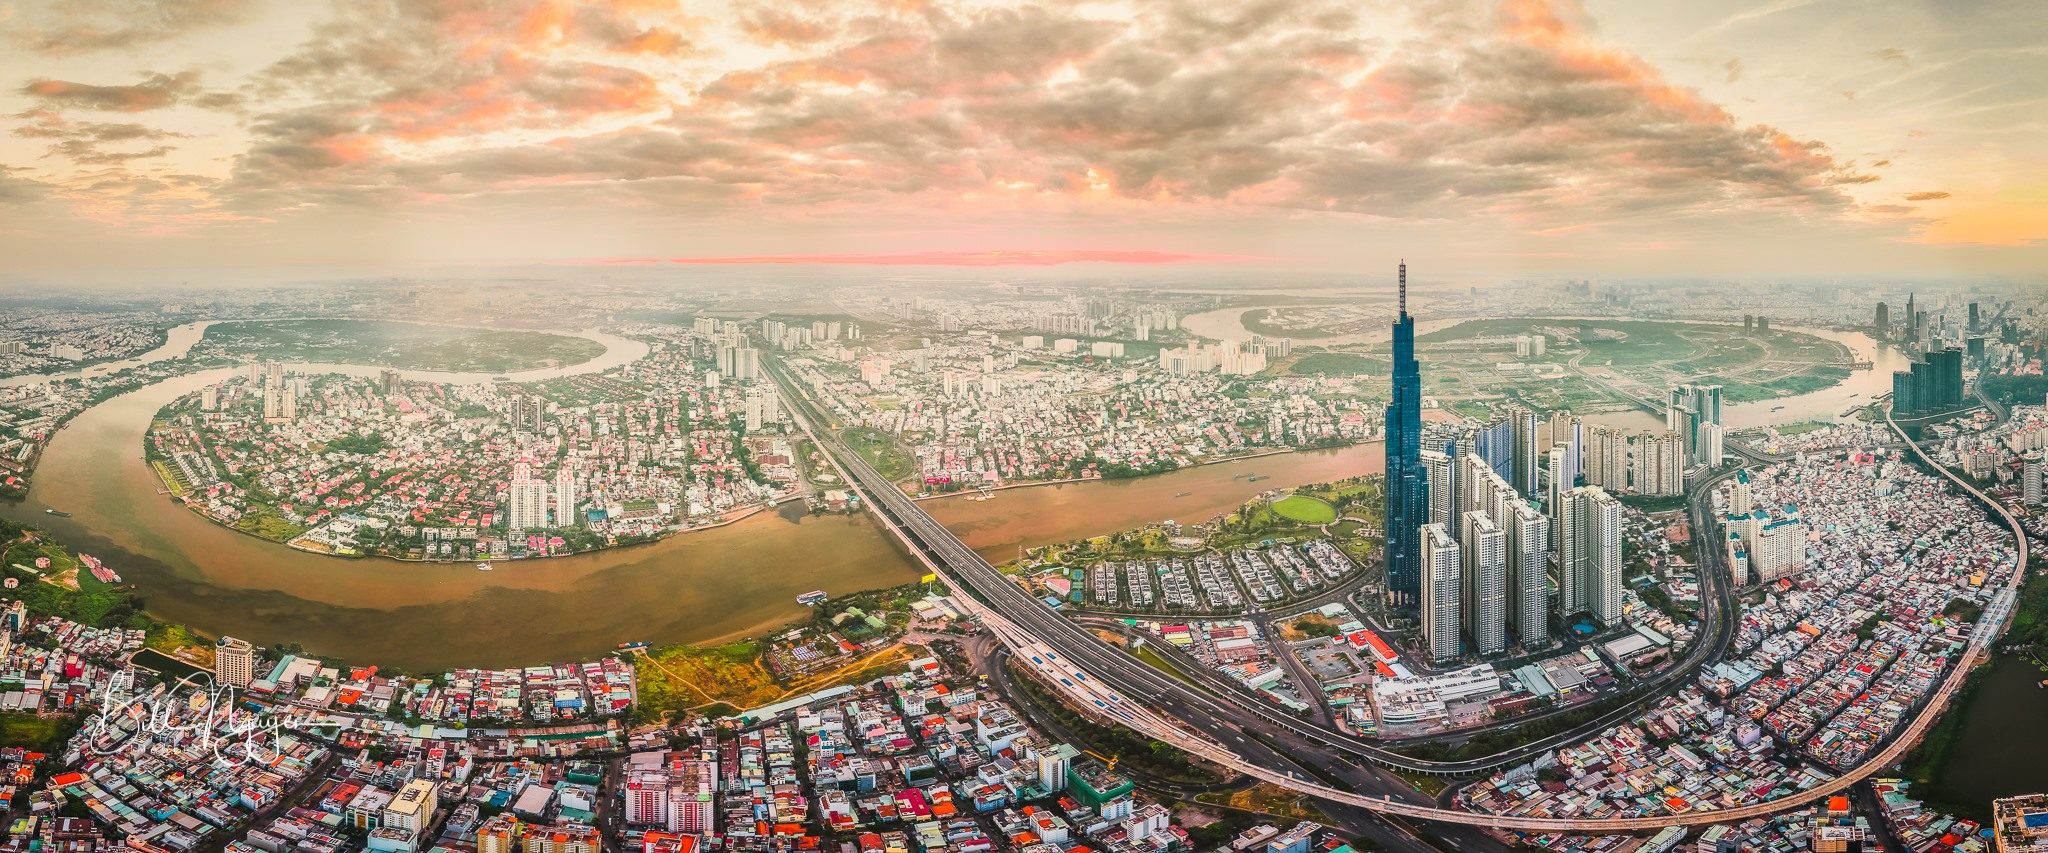 Năm 2018 thị trường địa ốc Thành phố Hồ Chí Minh gặp khó khăn vì rủi ro pháp lý. Ảnh Bill Nguyen.